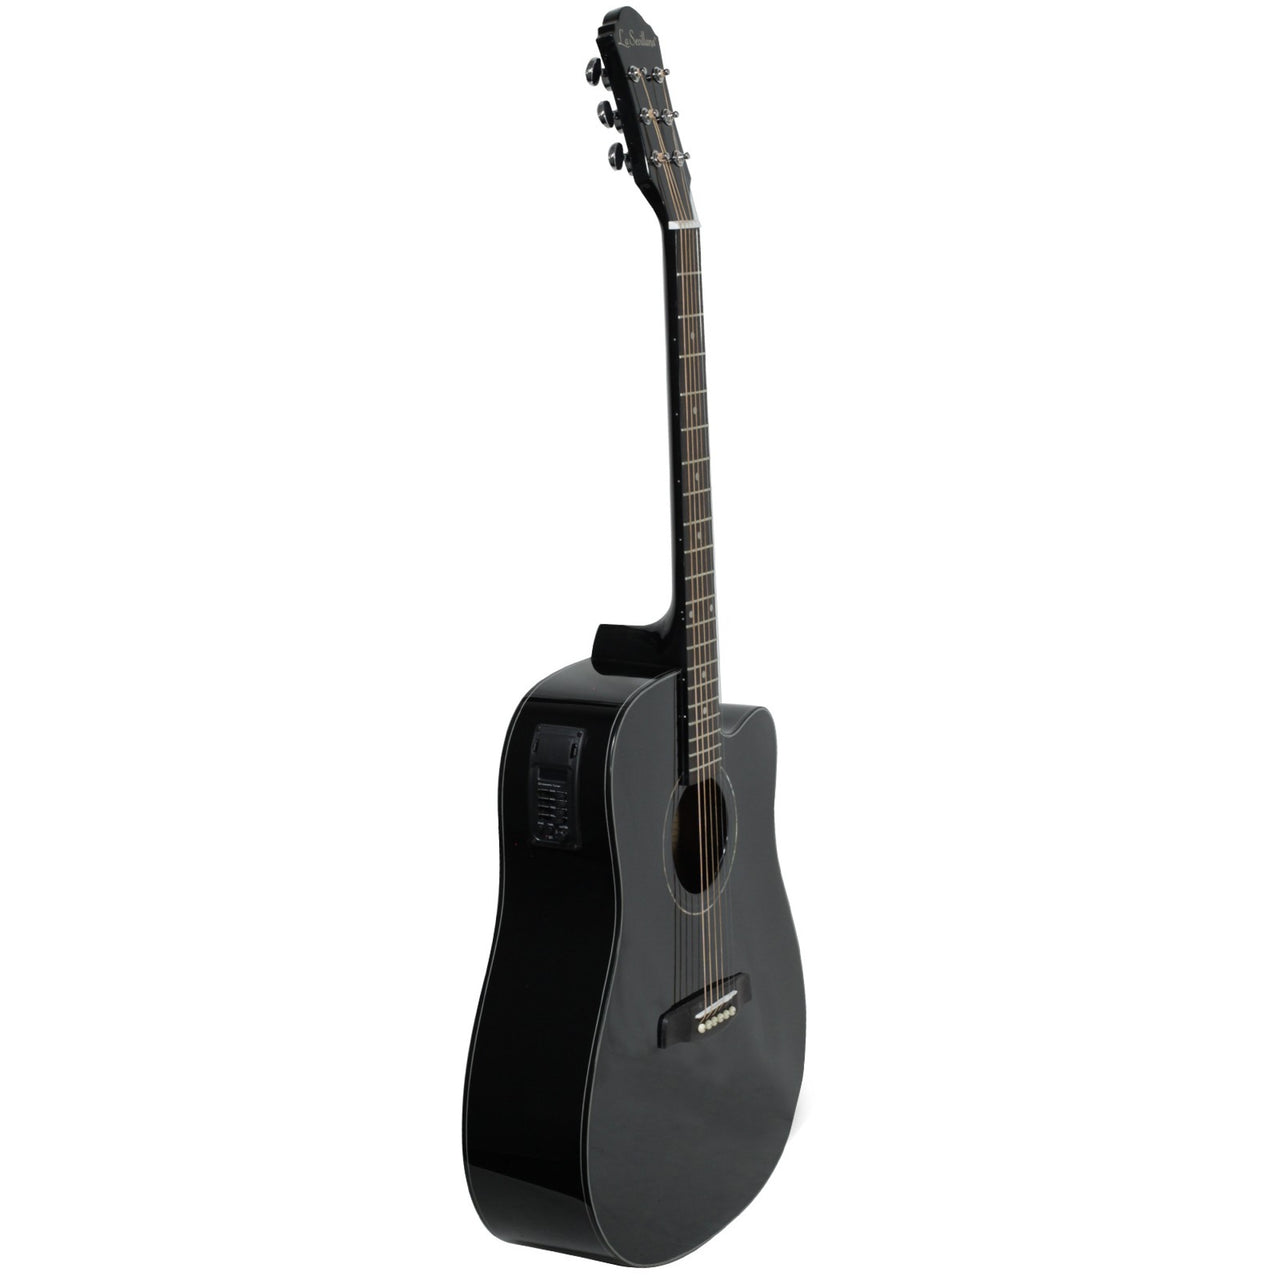 Guitarra Electroacustica La Sevillana Tx-200ceqblk Tipo Texana Negro